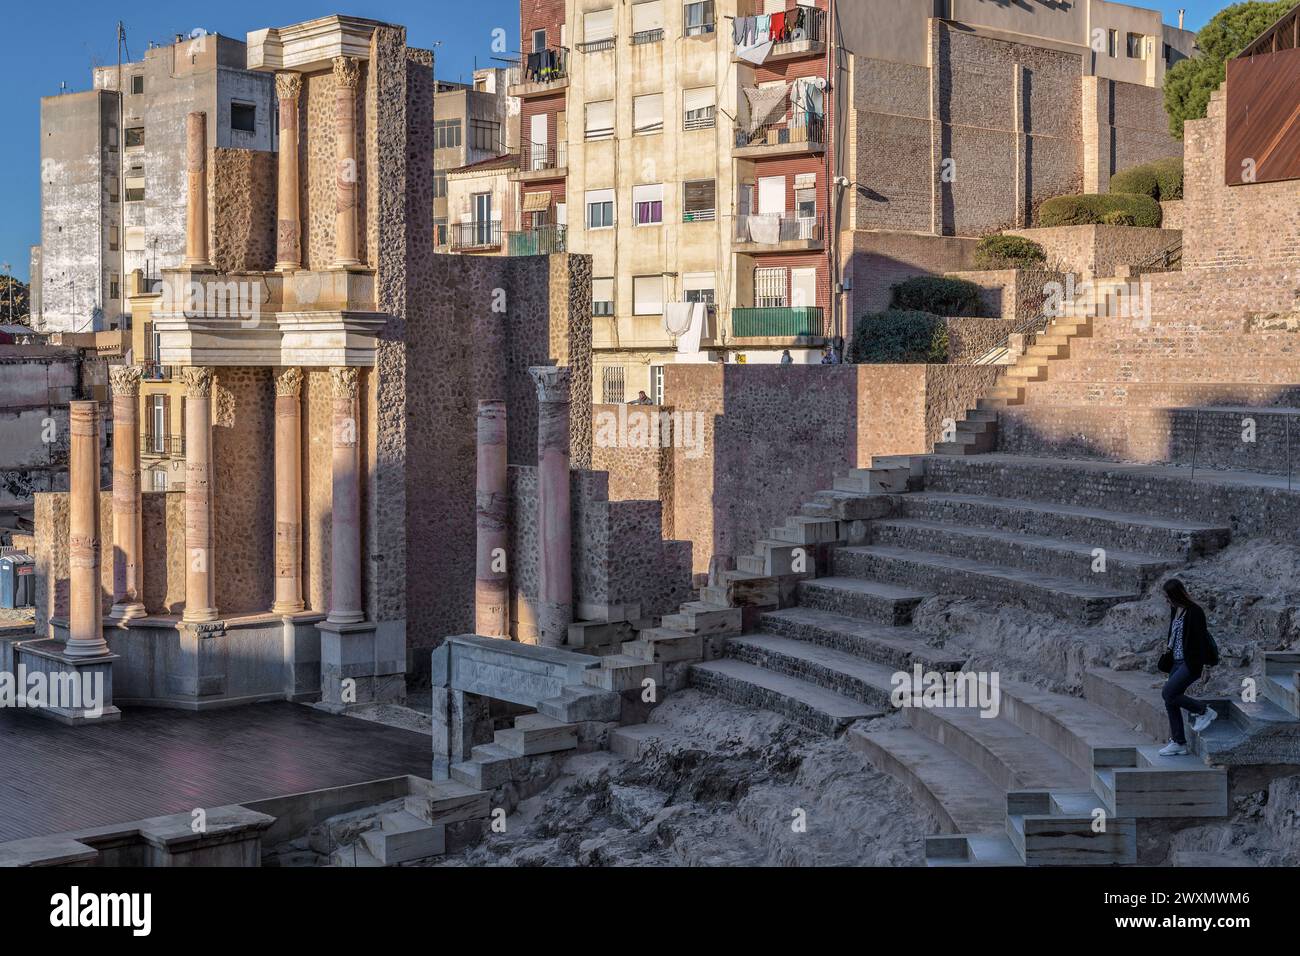 Rovine in restauro del teatro romano del i secolo a.C., scoperta archeologica nella città di Cartagena, regione di Murcia, Spagna. Foto Stock